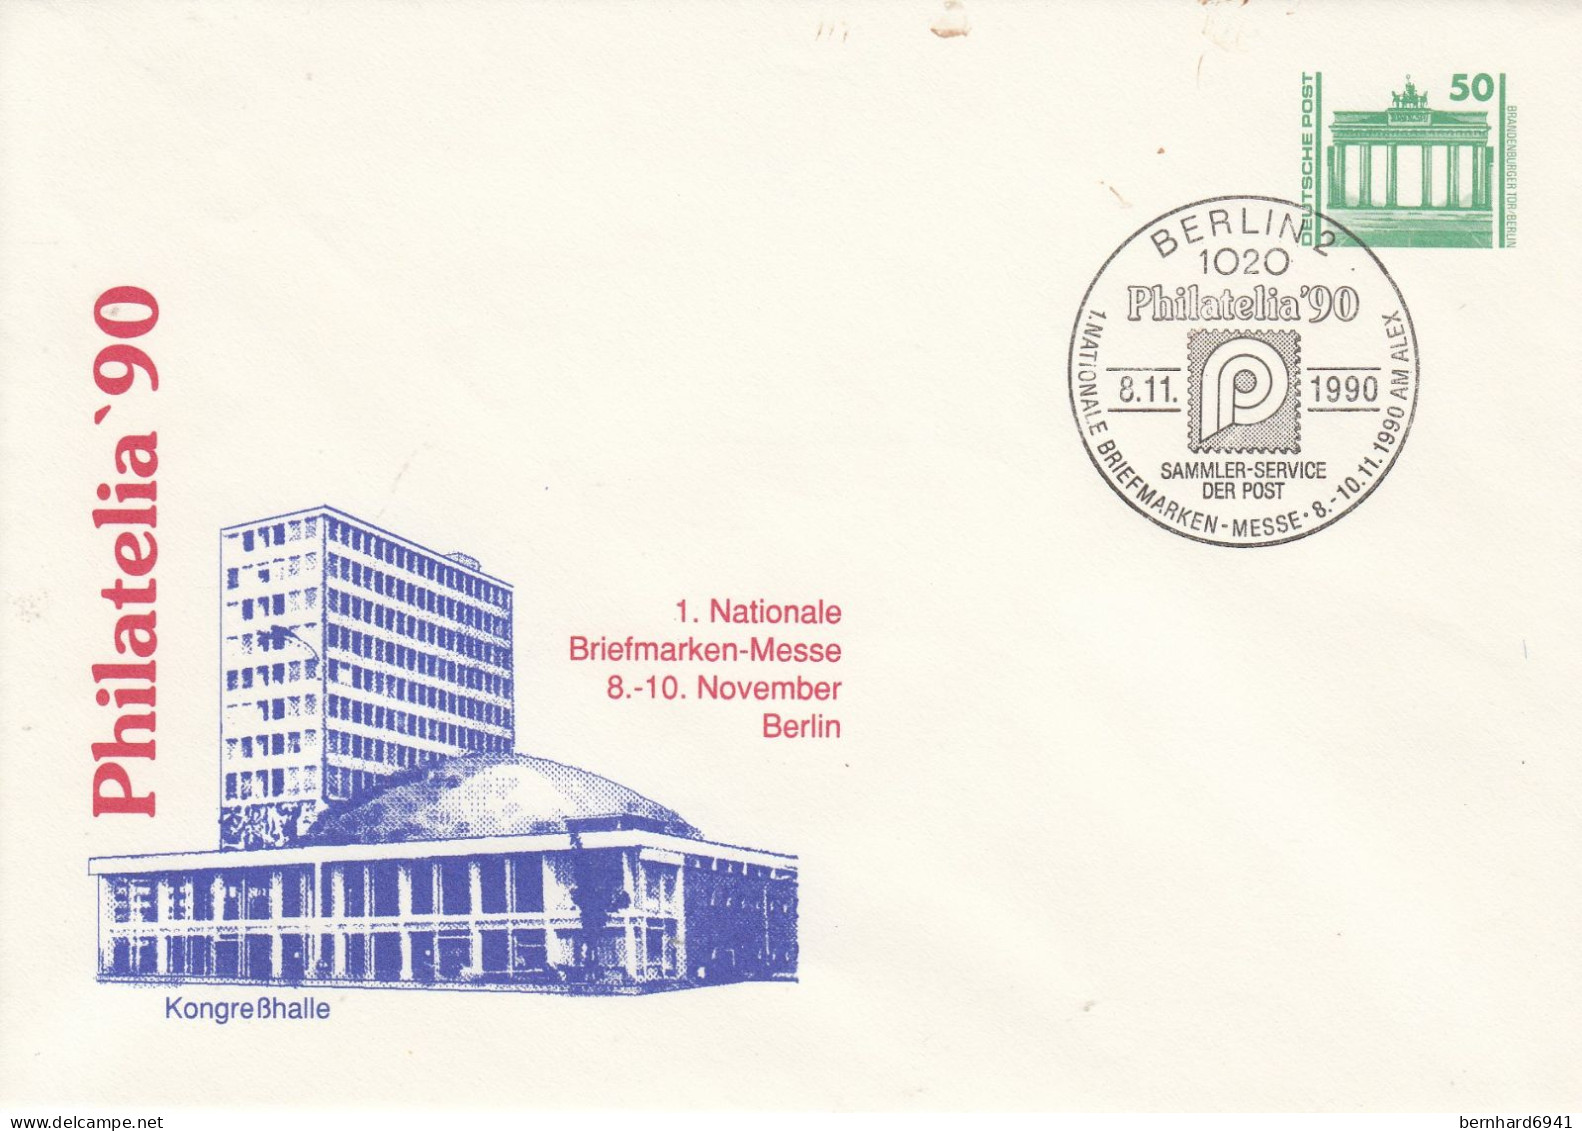 DPU17/3  Philatelia '90 - 1. Nationale Briefmarken-Messe 8.-10.November Berlin, Berlin 12 - Briefomslagen - Ongebruikt